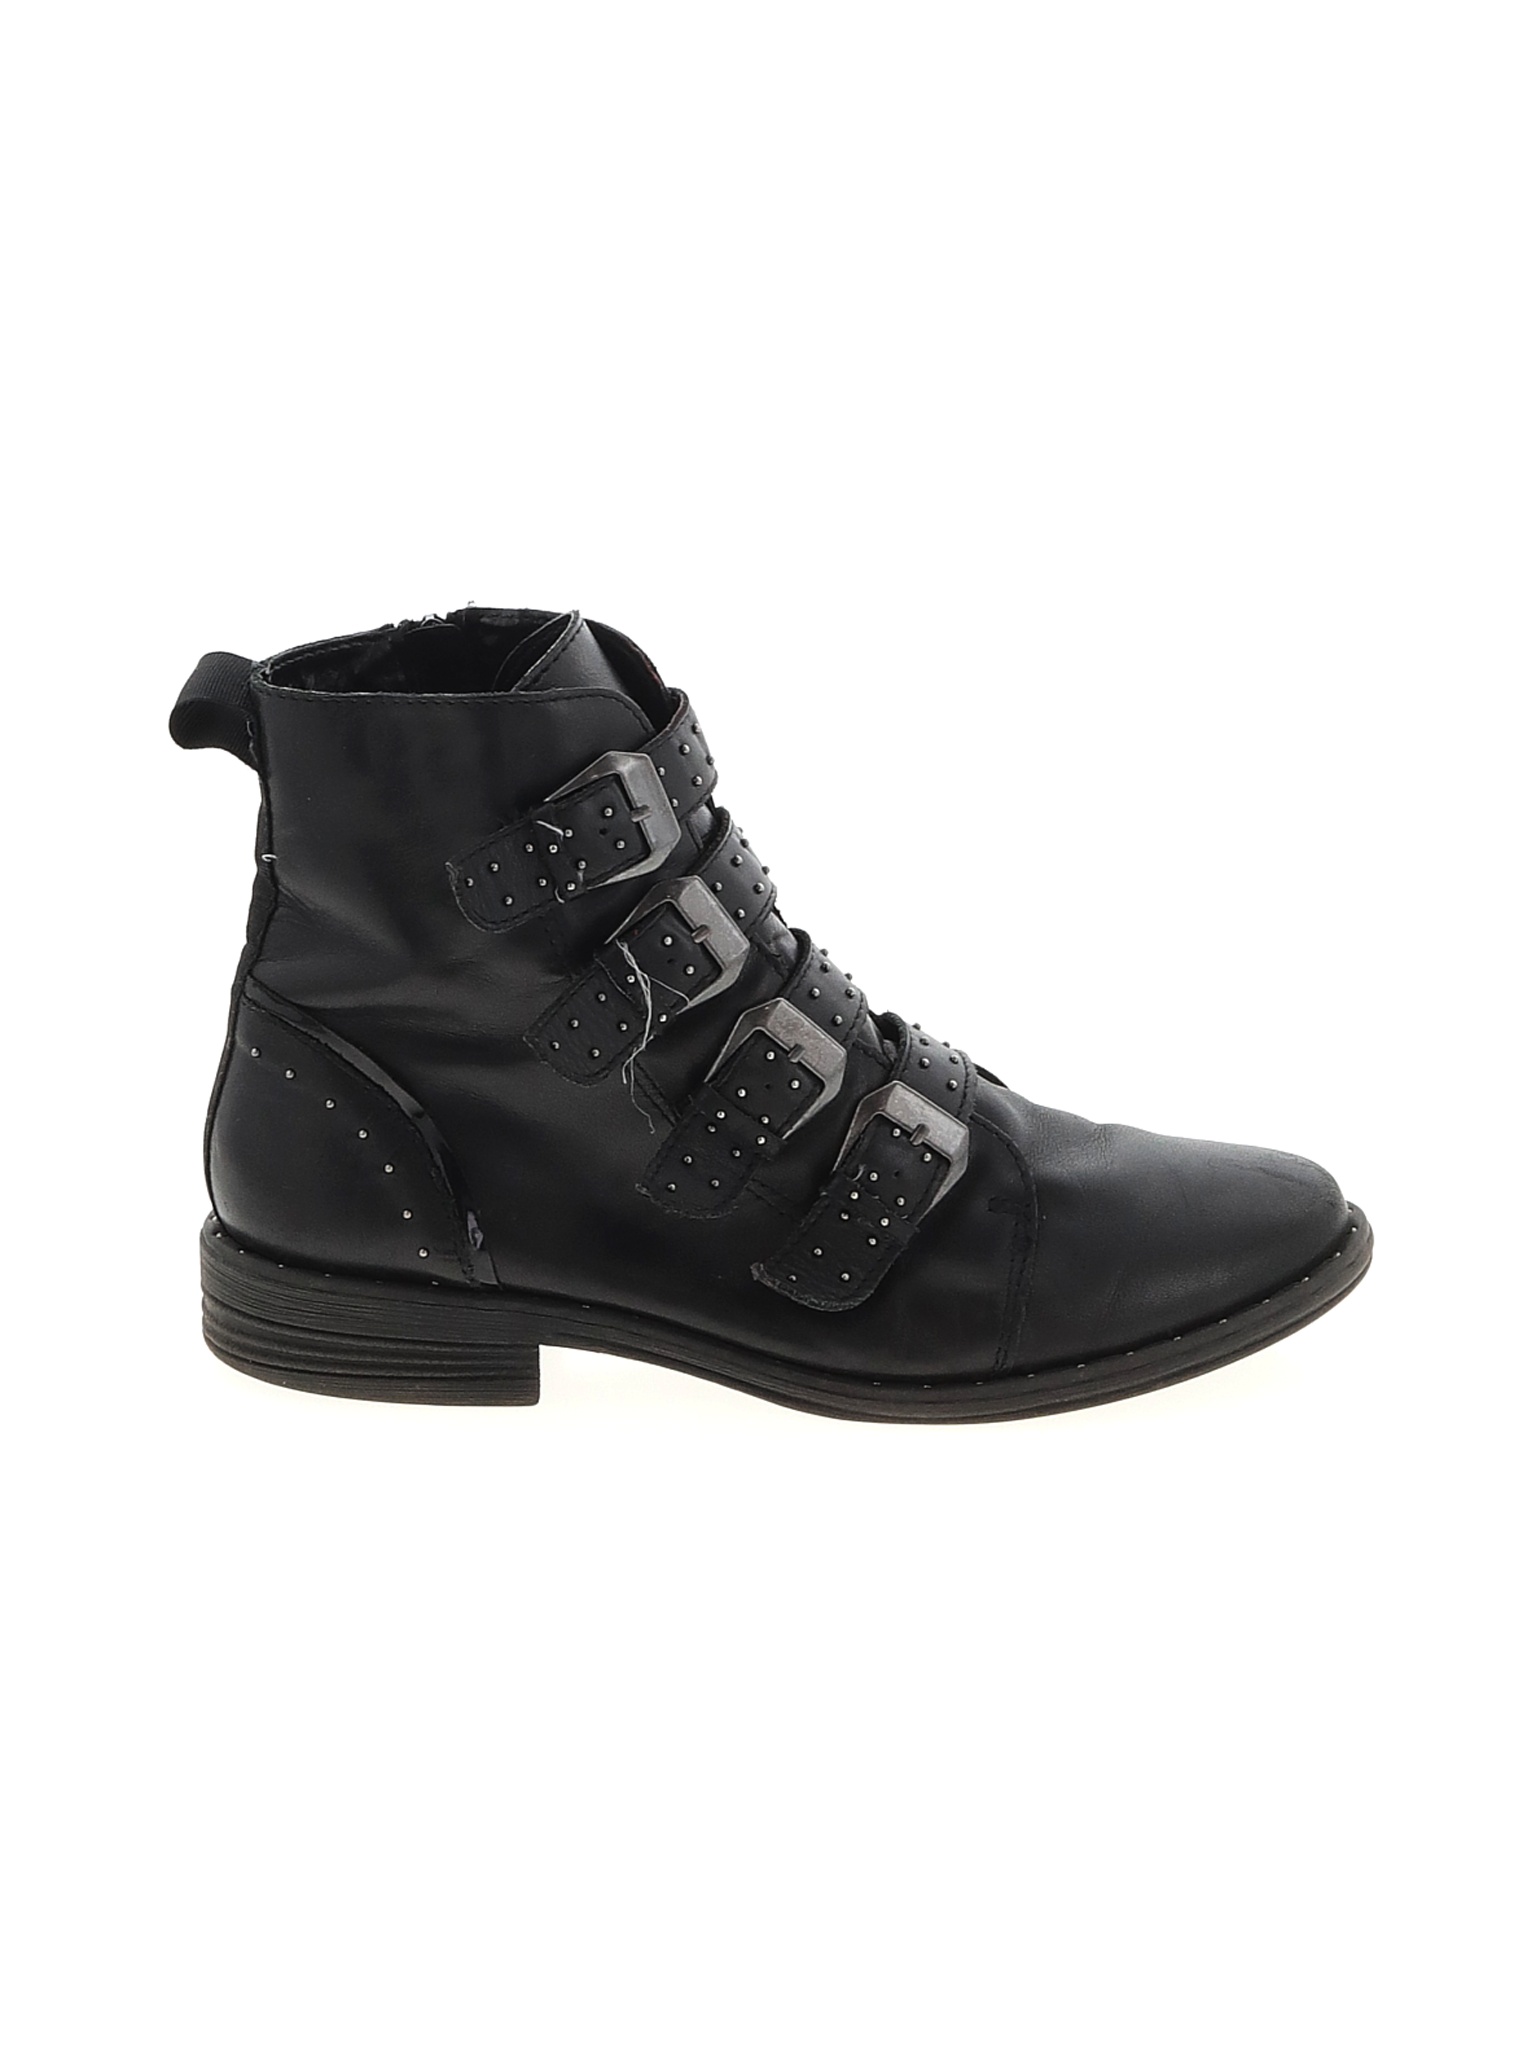 Steve Madden Women Black Ankle Boots US 8 | eBay